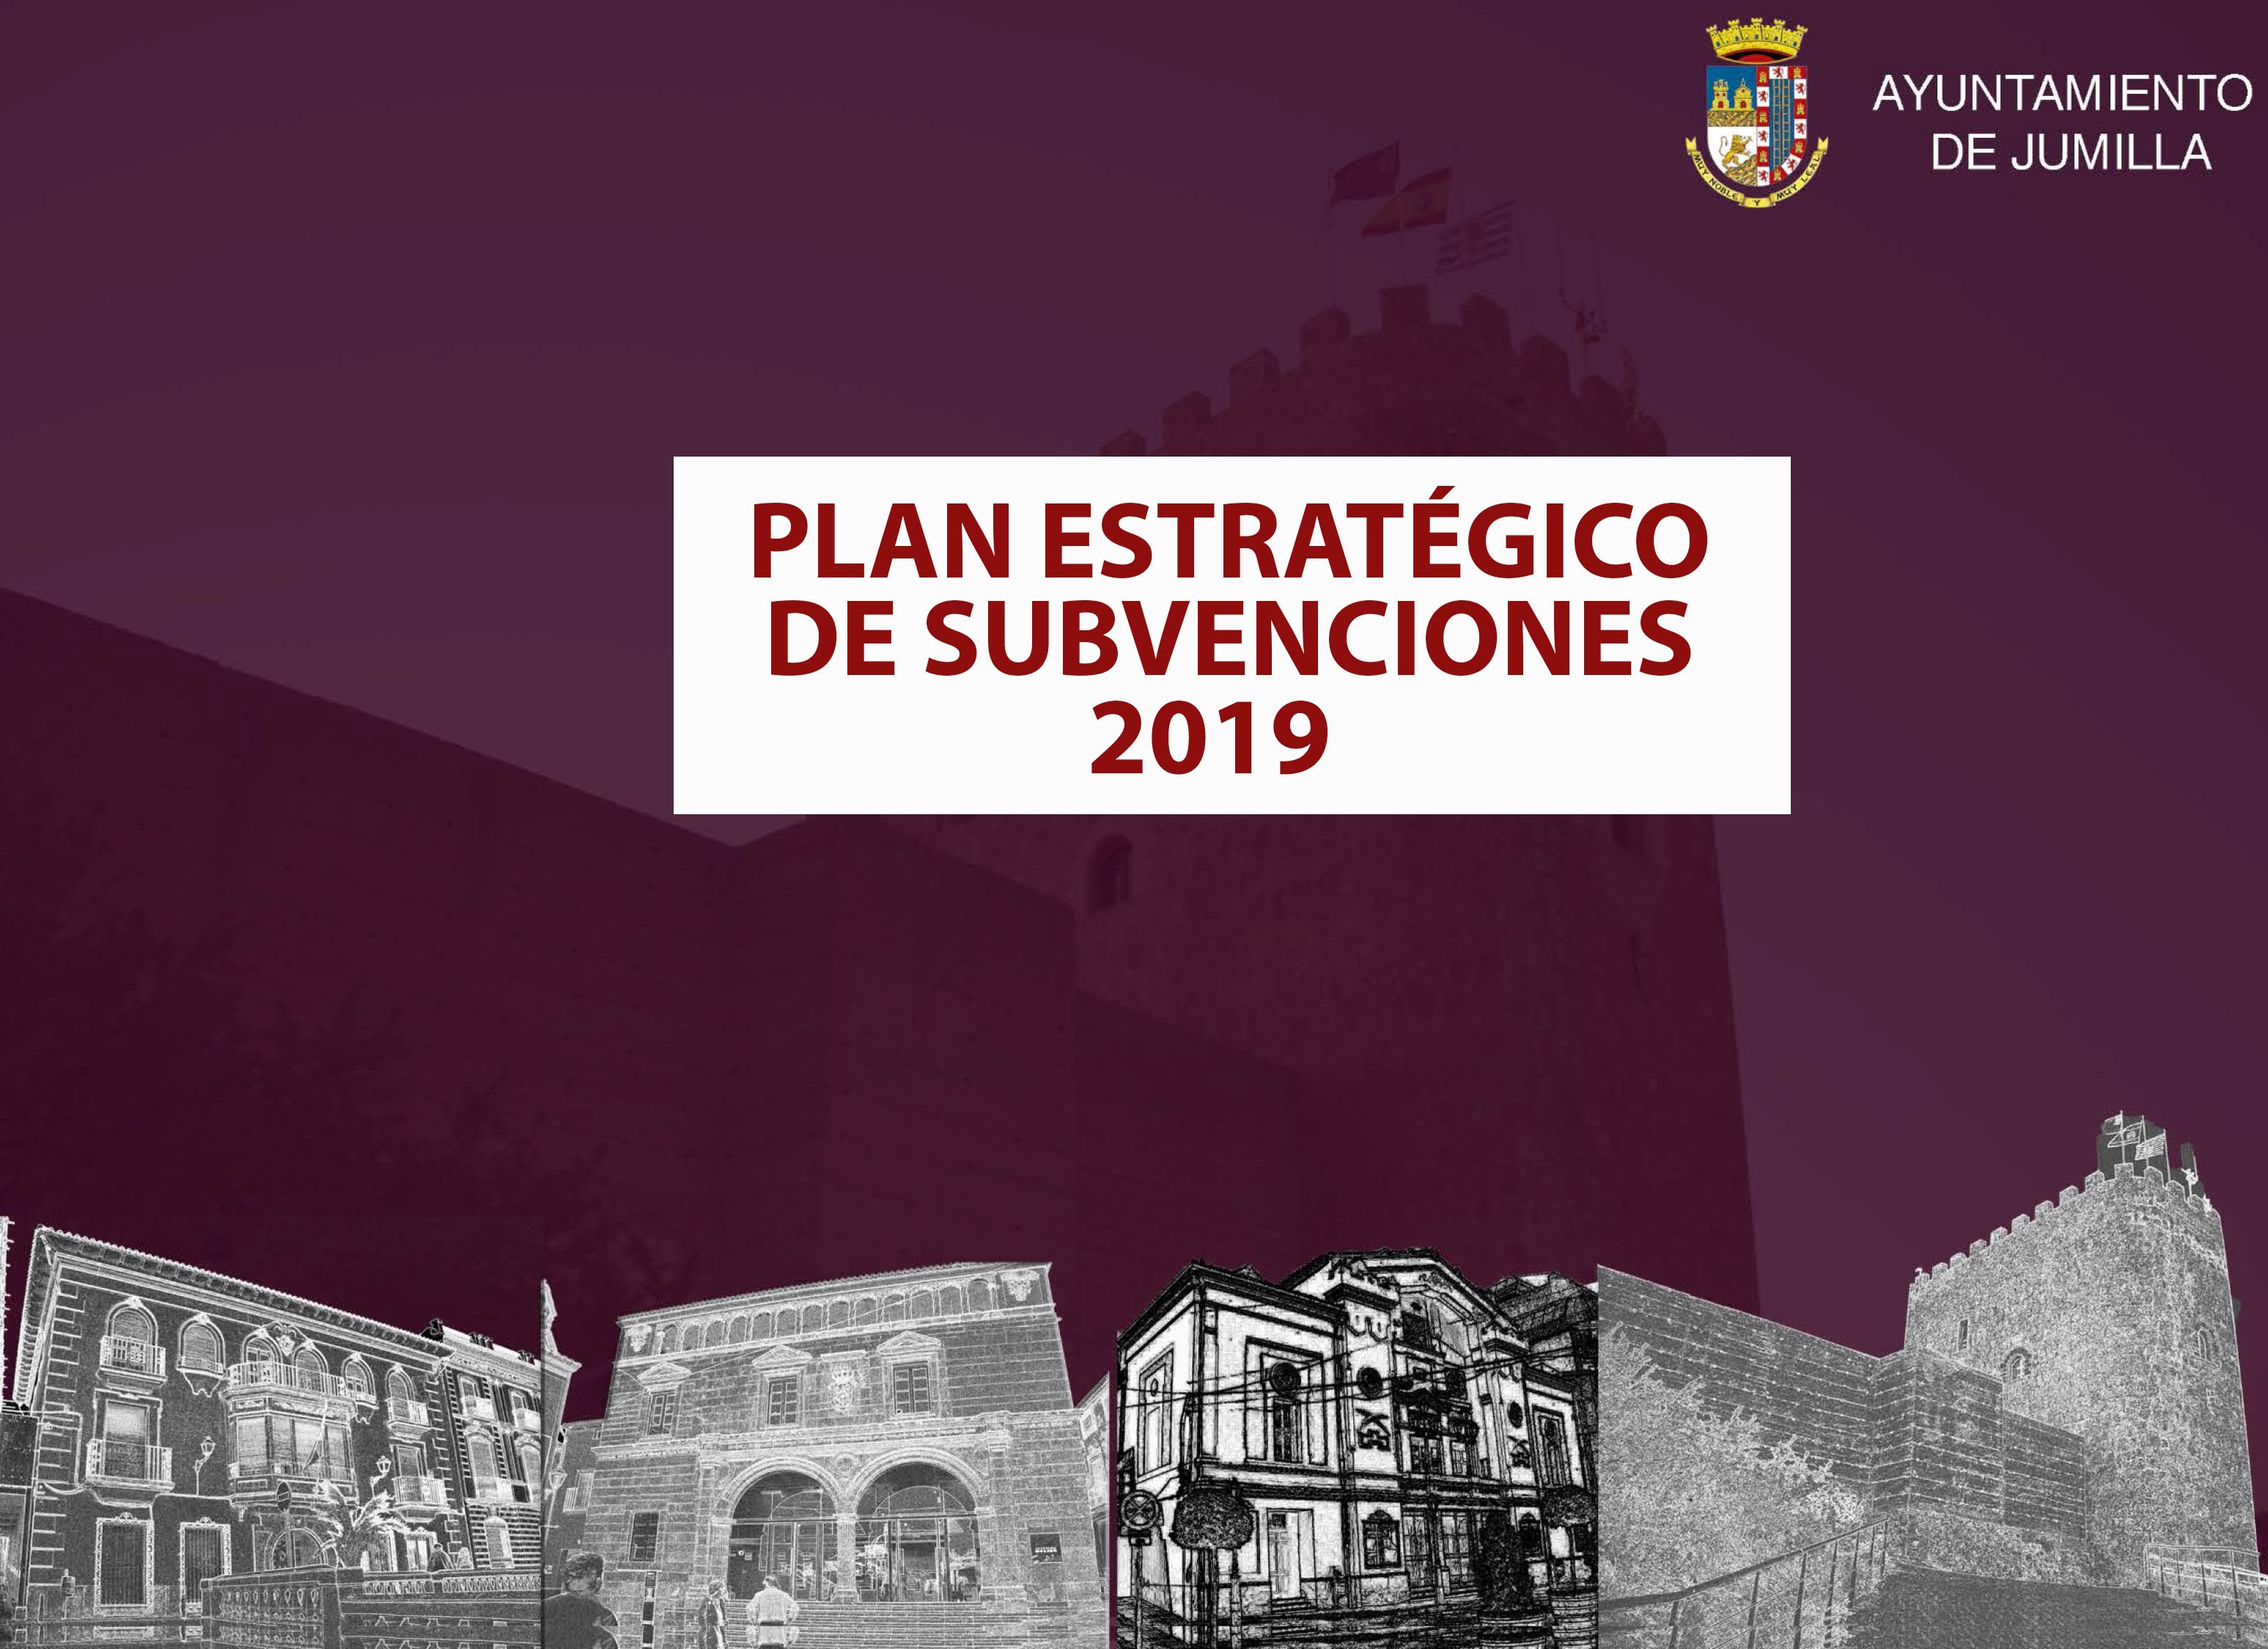 El Ayuntamiento aprueba Plan Estratégico de Subvenciones 2019 por 779.000 euros